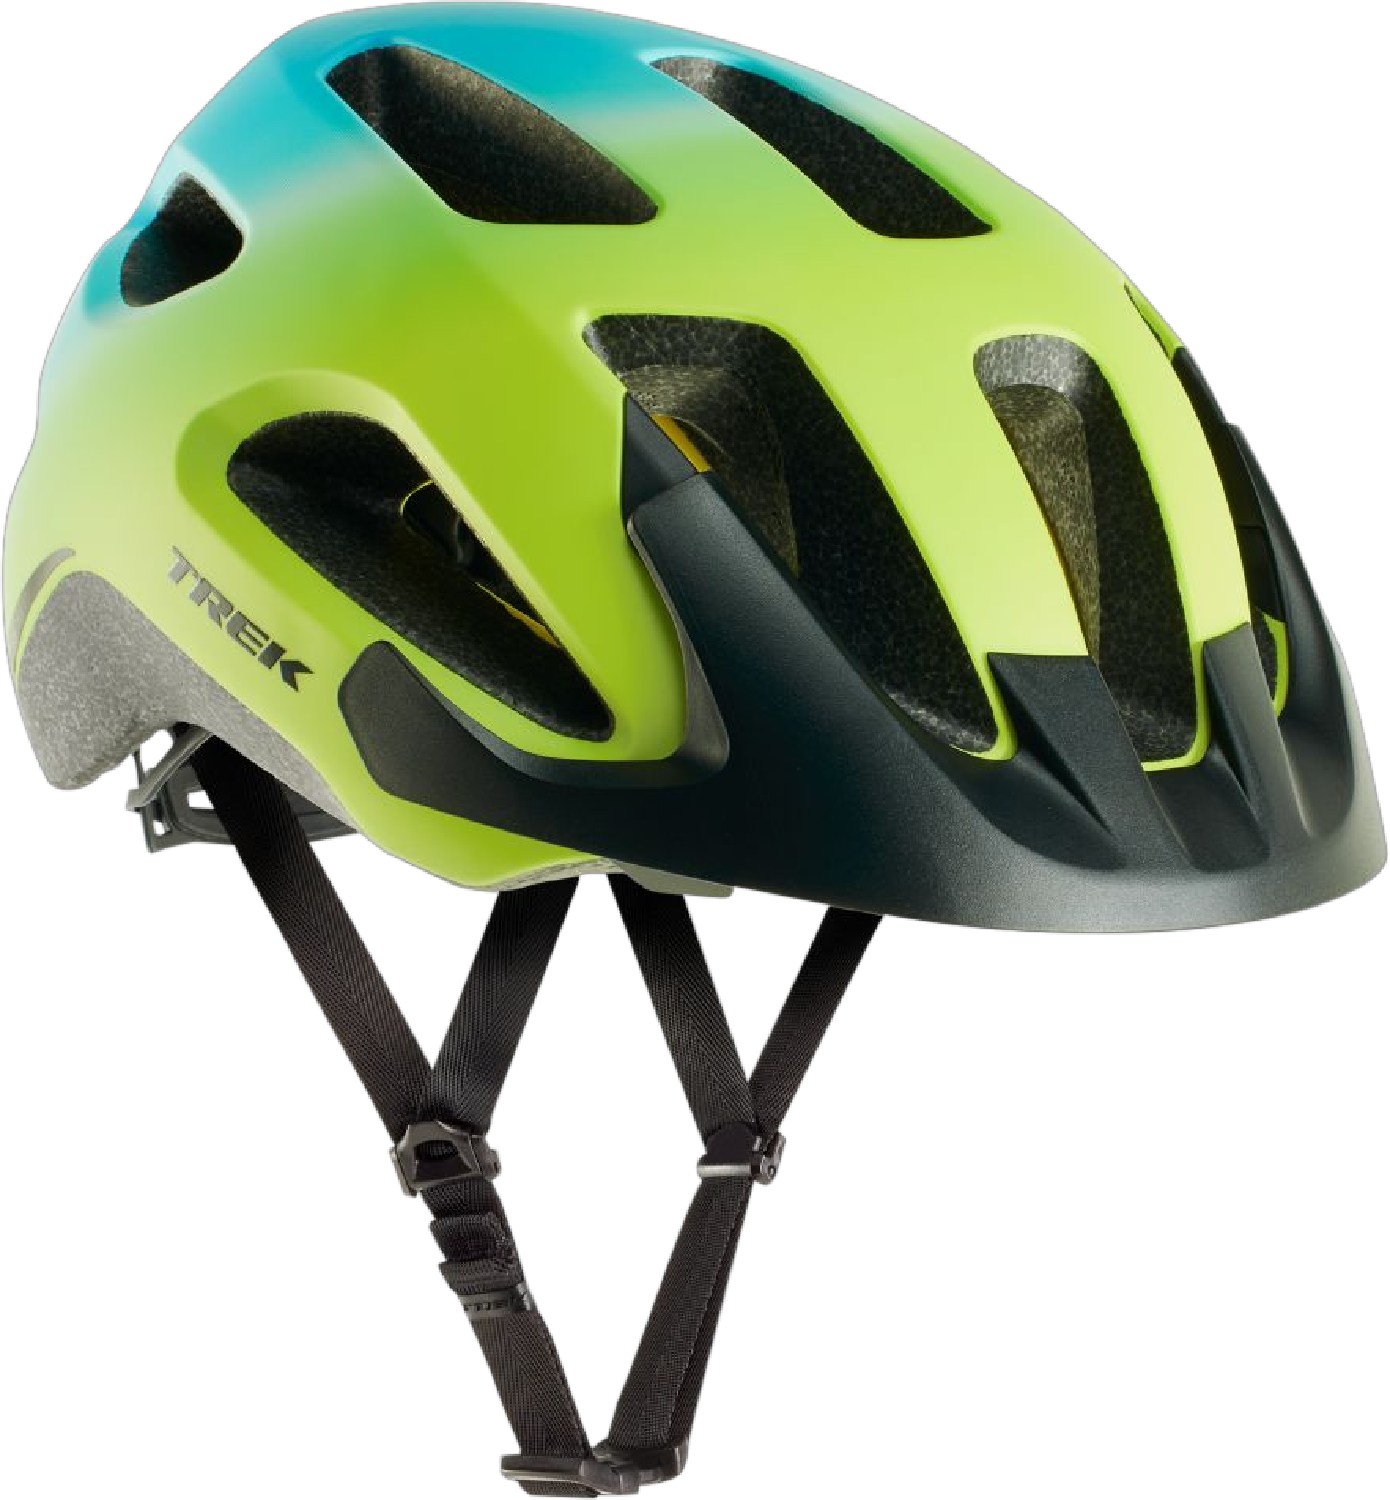 Велосипедный шлем Solstice Mips Trek, зеленый 1 шт велосипедный переключатель передач для trek 297656 322175 trek skye series elite 9 9 rocx spr livestrong fx trek 8500 mech dropout